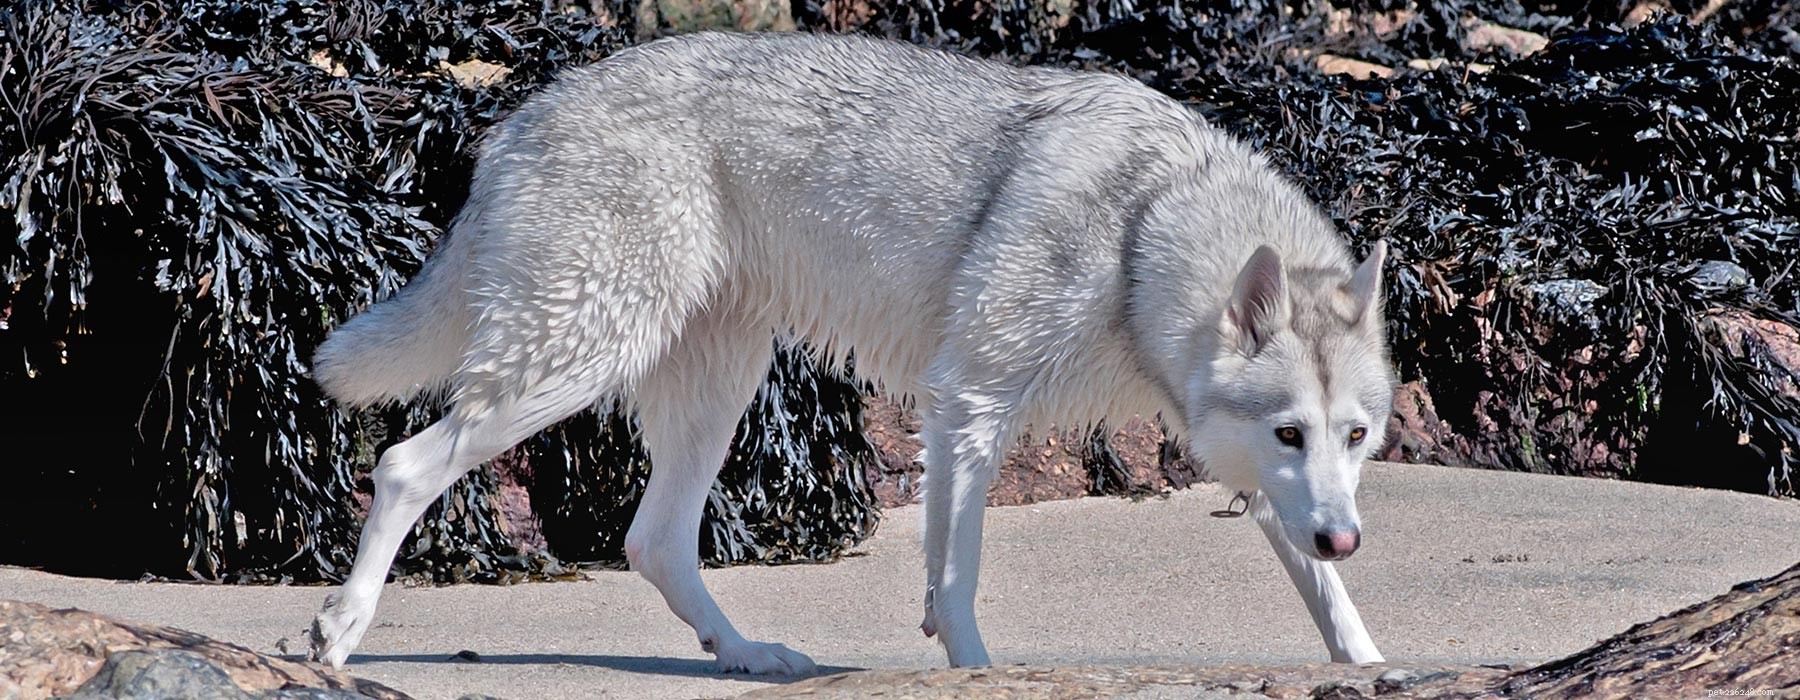 Cane Inuit del nord:la croce che assomiglia a un lupo